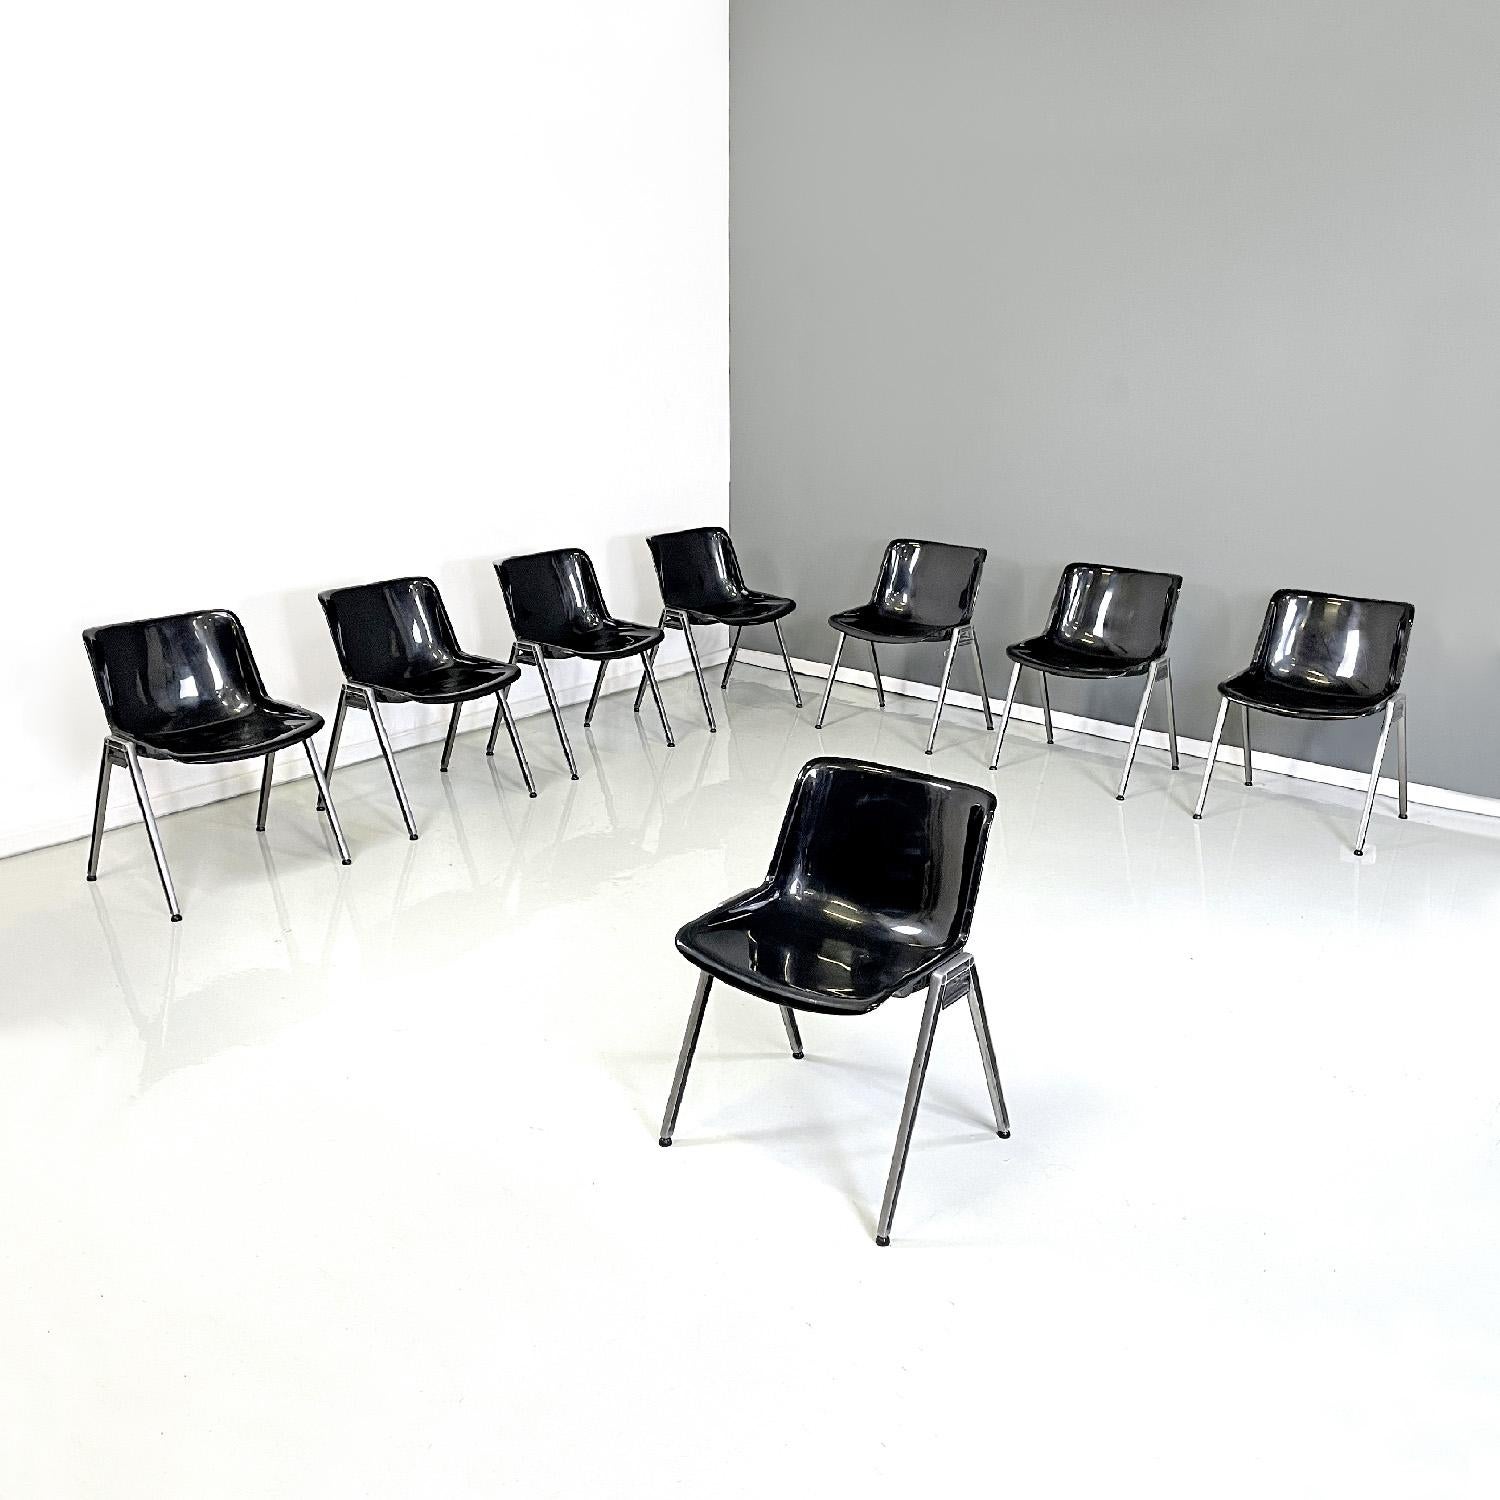 Moderne italienische Stühle aus schwarzem Kunststoff Modus SM 203 von Borsani für Tecno, 1980er Jahre
Stühle Mod. Modus SM 203 mit Sitz und Rückenlehne aus einem gebogenen schwarzen Kunststoff-Monocoque. Die Aluminiumbeine sind quadratisch. Runde